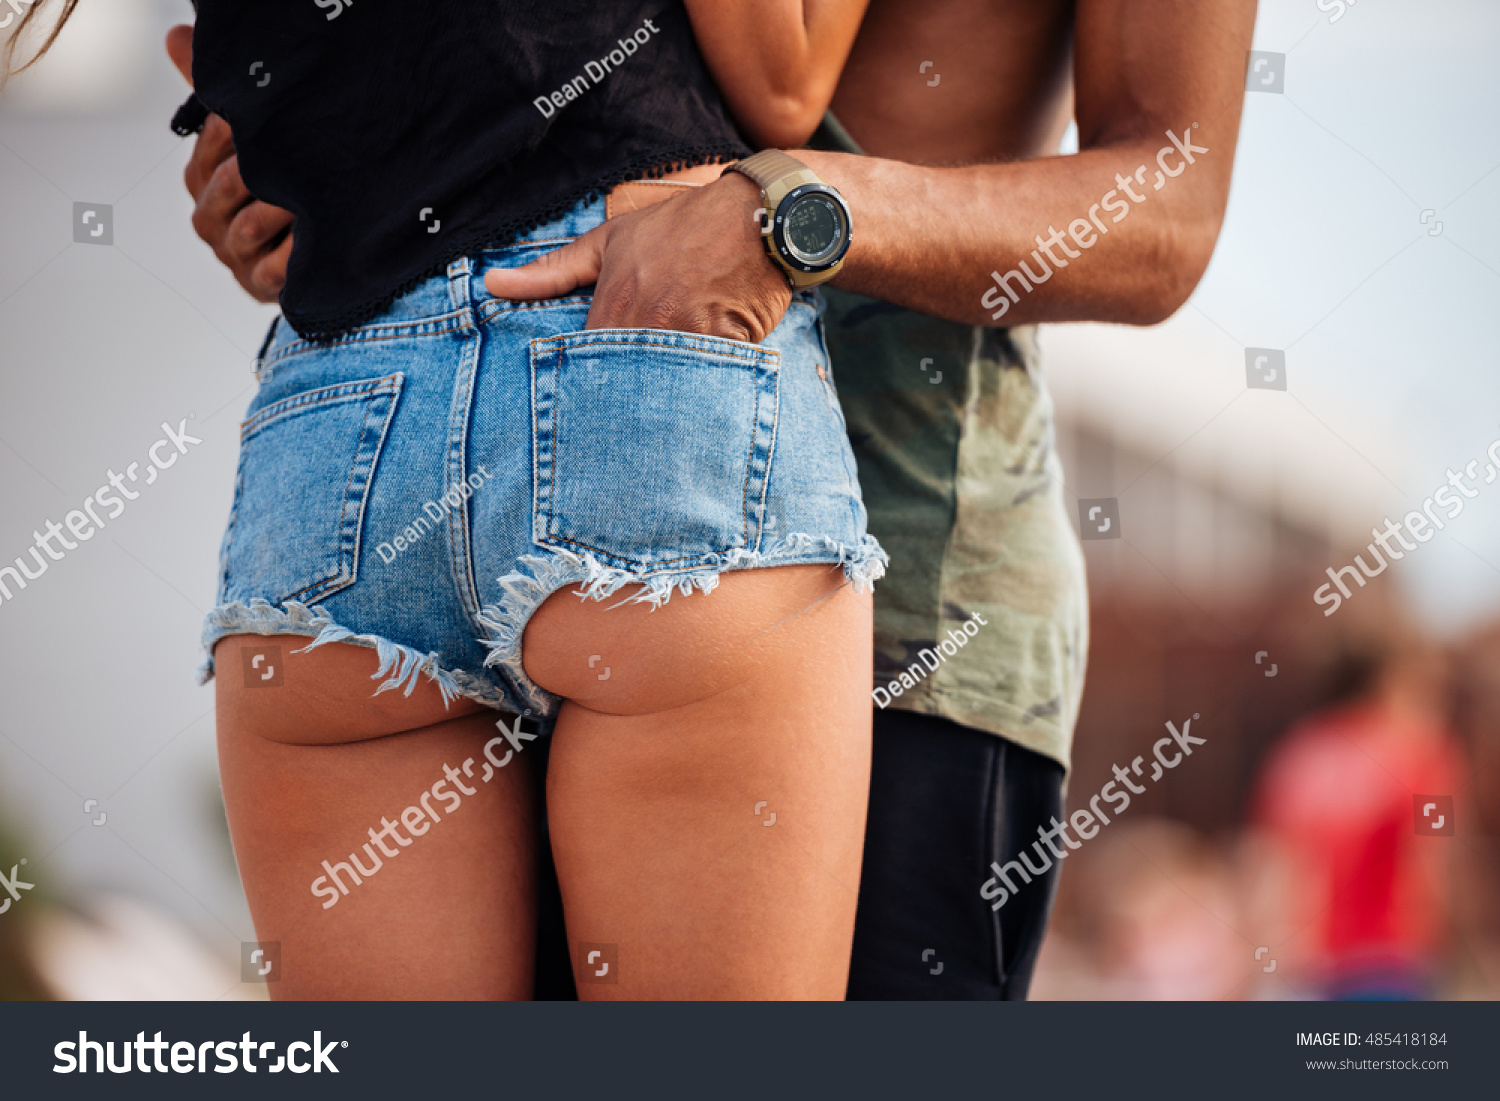 Горячая баба с сочной попкой и в джинсовых шортах занимается мастурбацией перед парнем